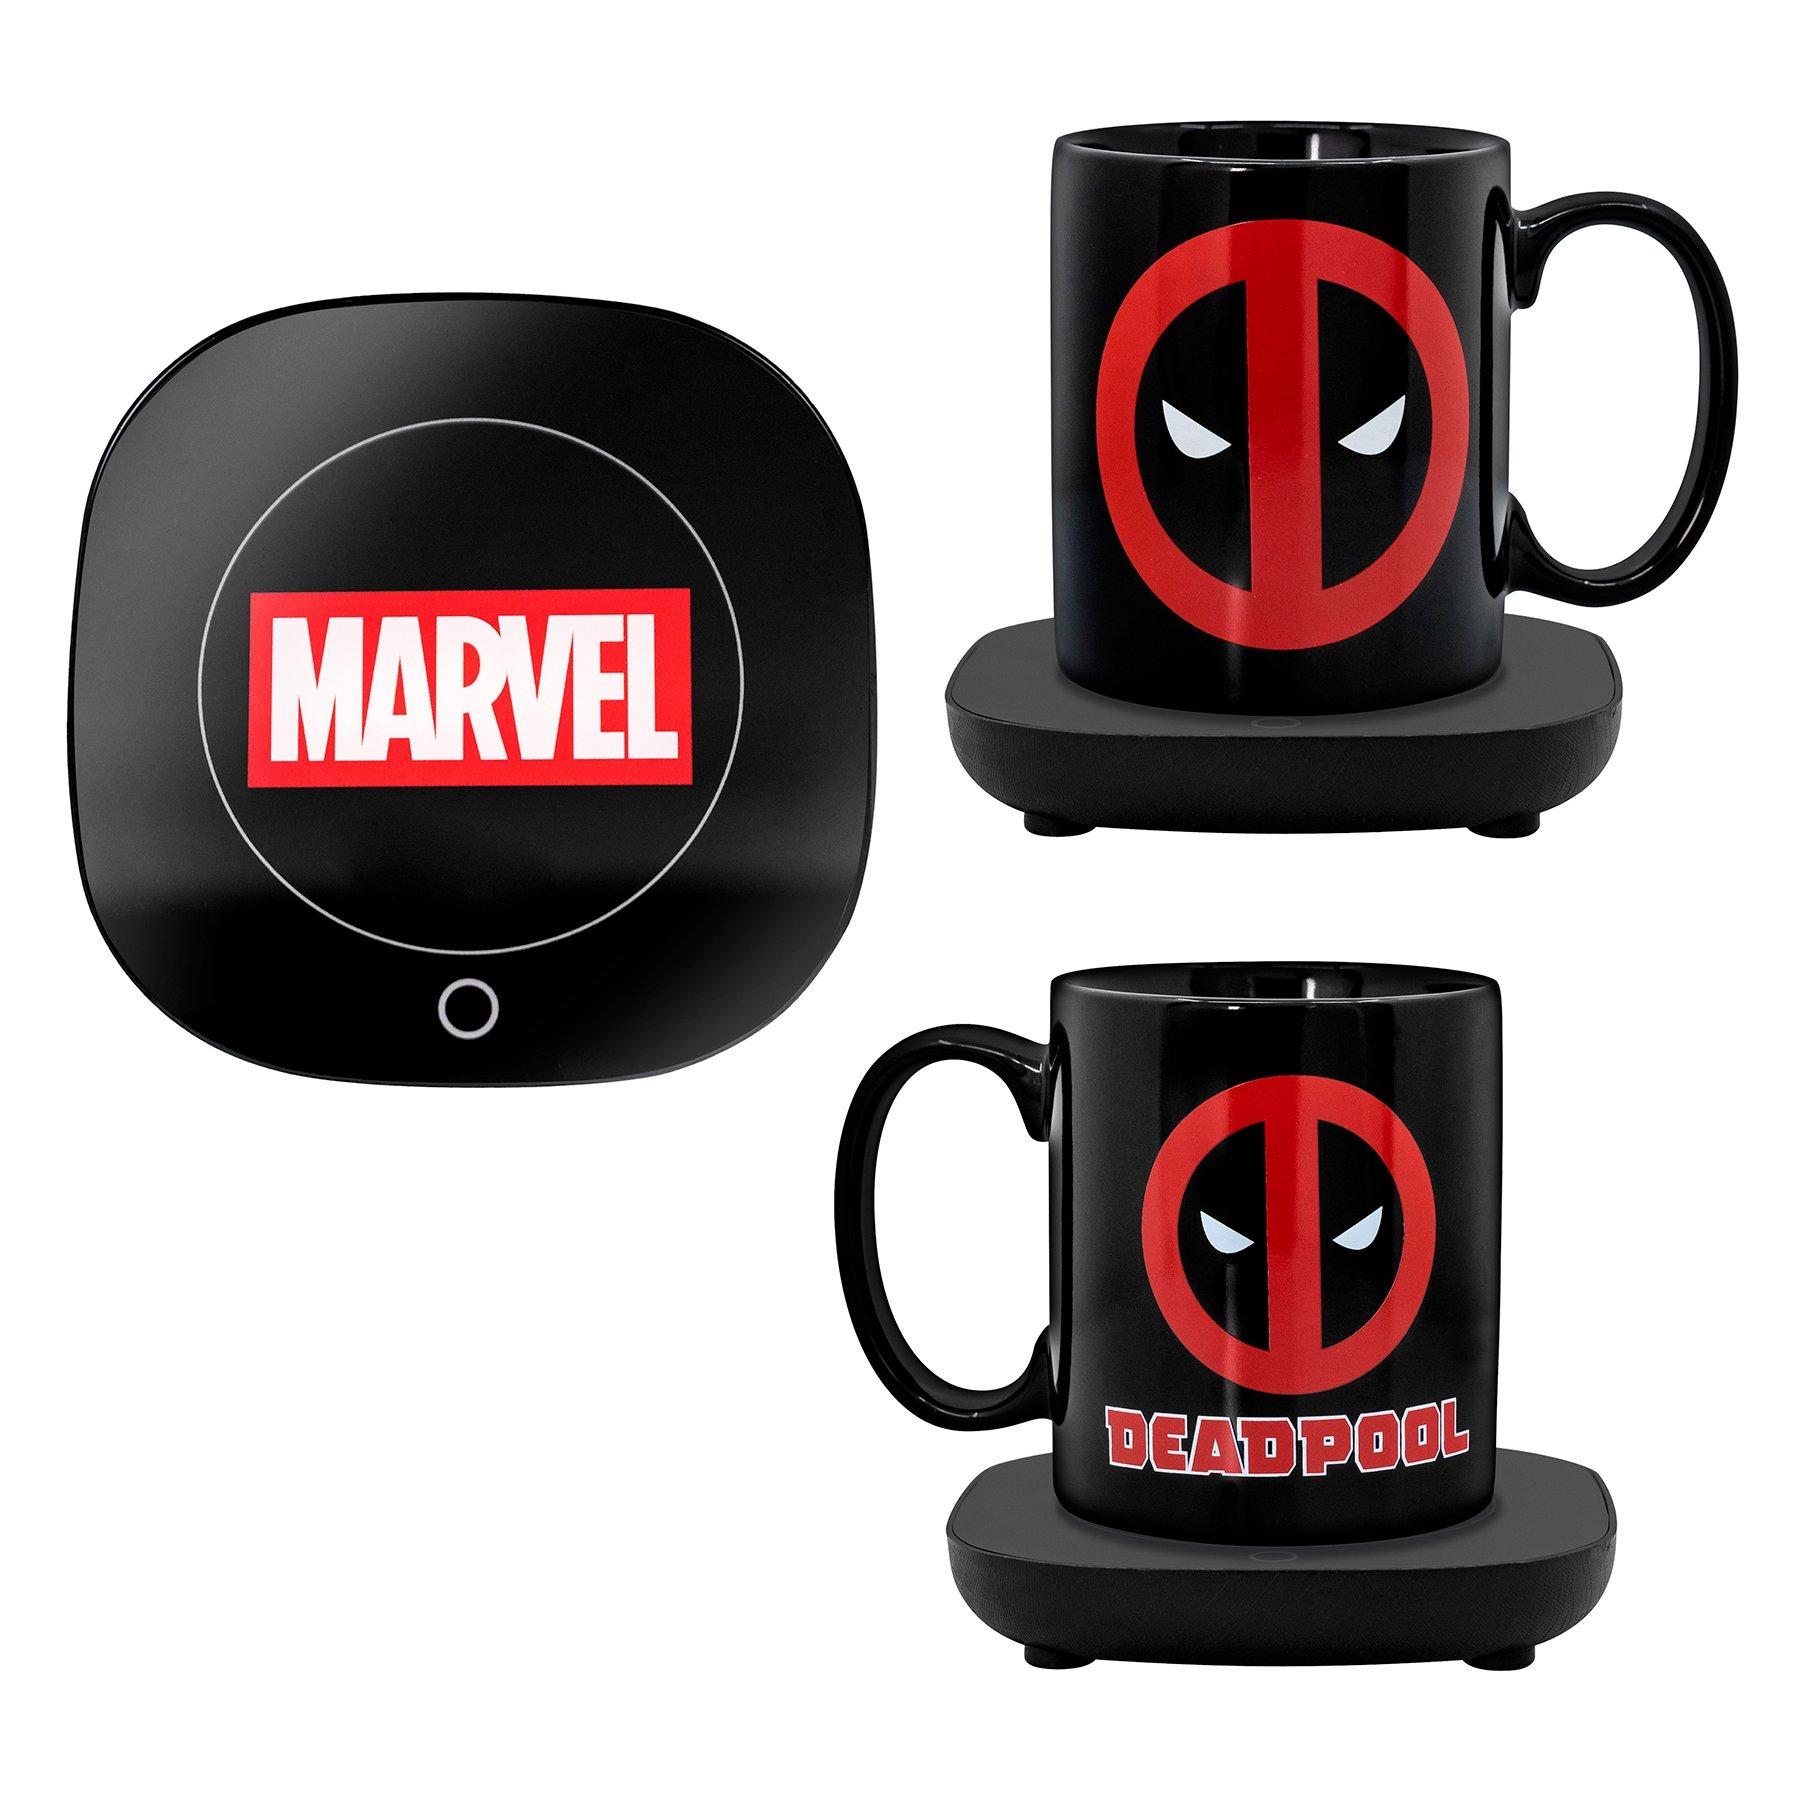 https://media.gamestop.com/i/gamestop/20005592/Marvels-Deadpool-Mug-Warmer-with-Mug?$pdp$